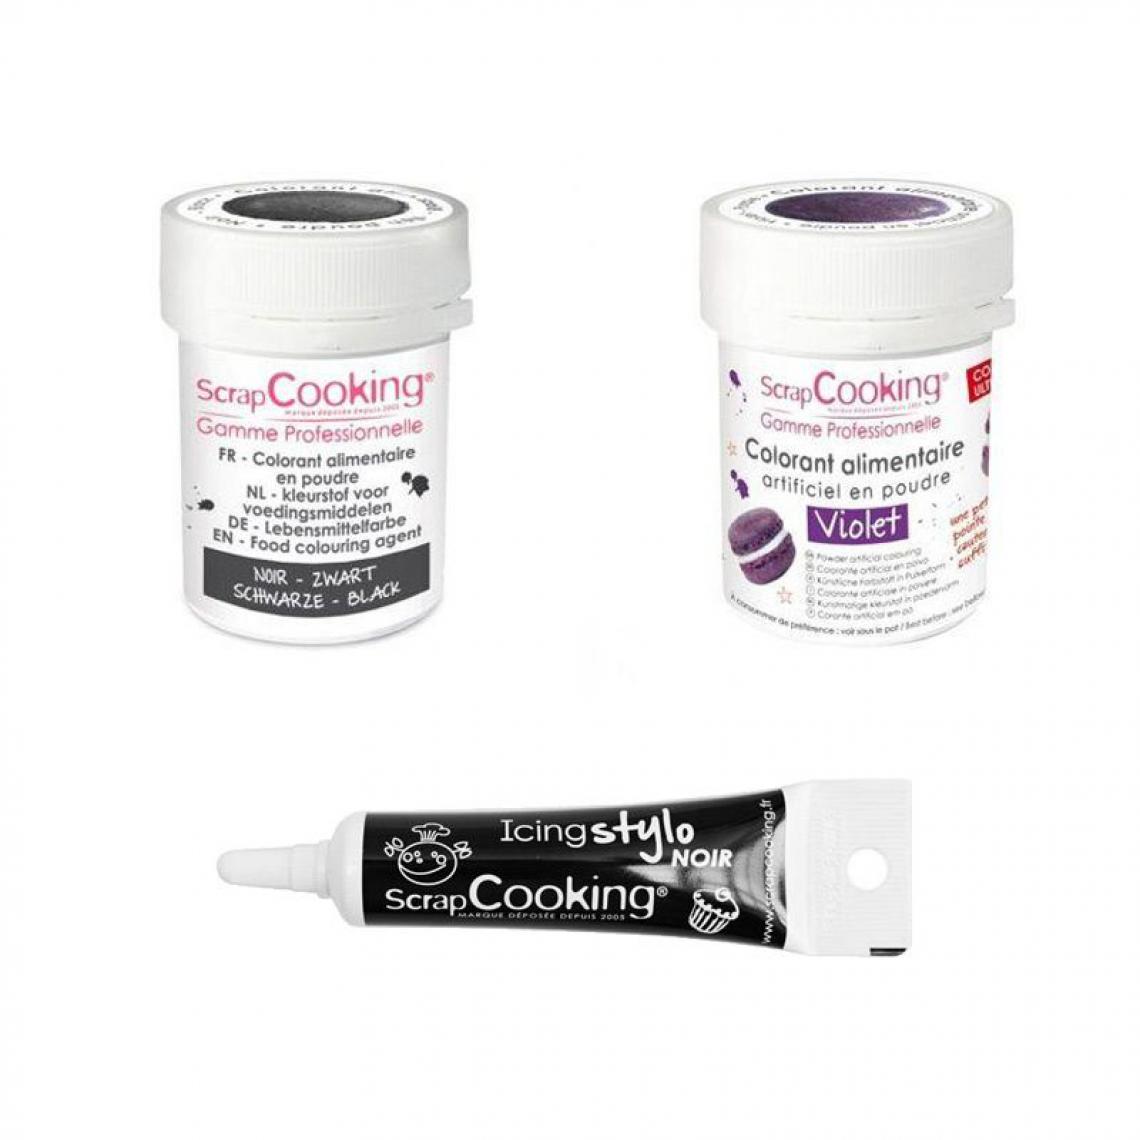 Scrapcooking - 2 colorants alimentaires noir-violet + Stylo glaçage noir - Kits créatifs